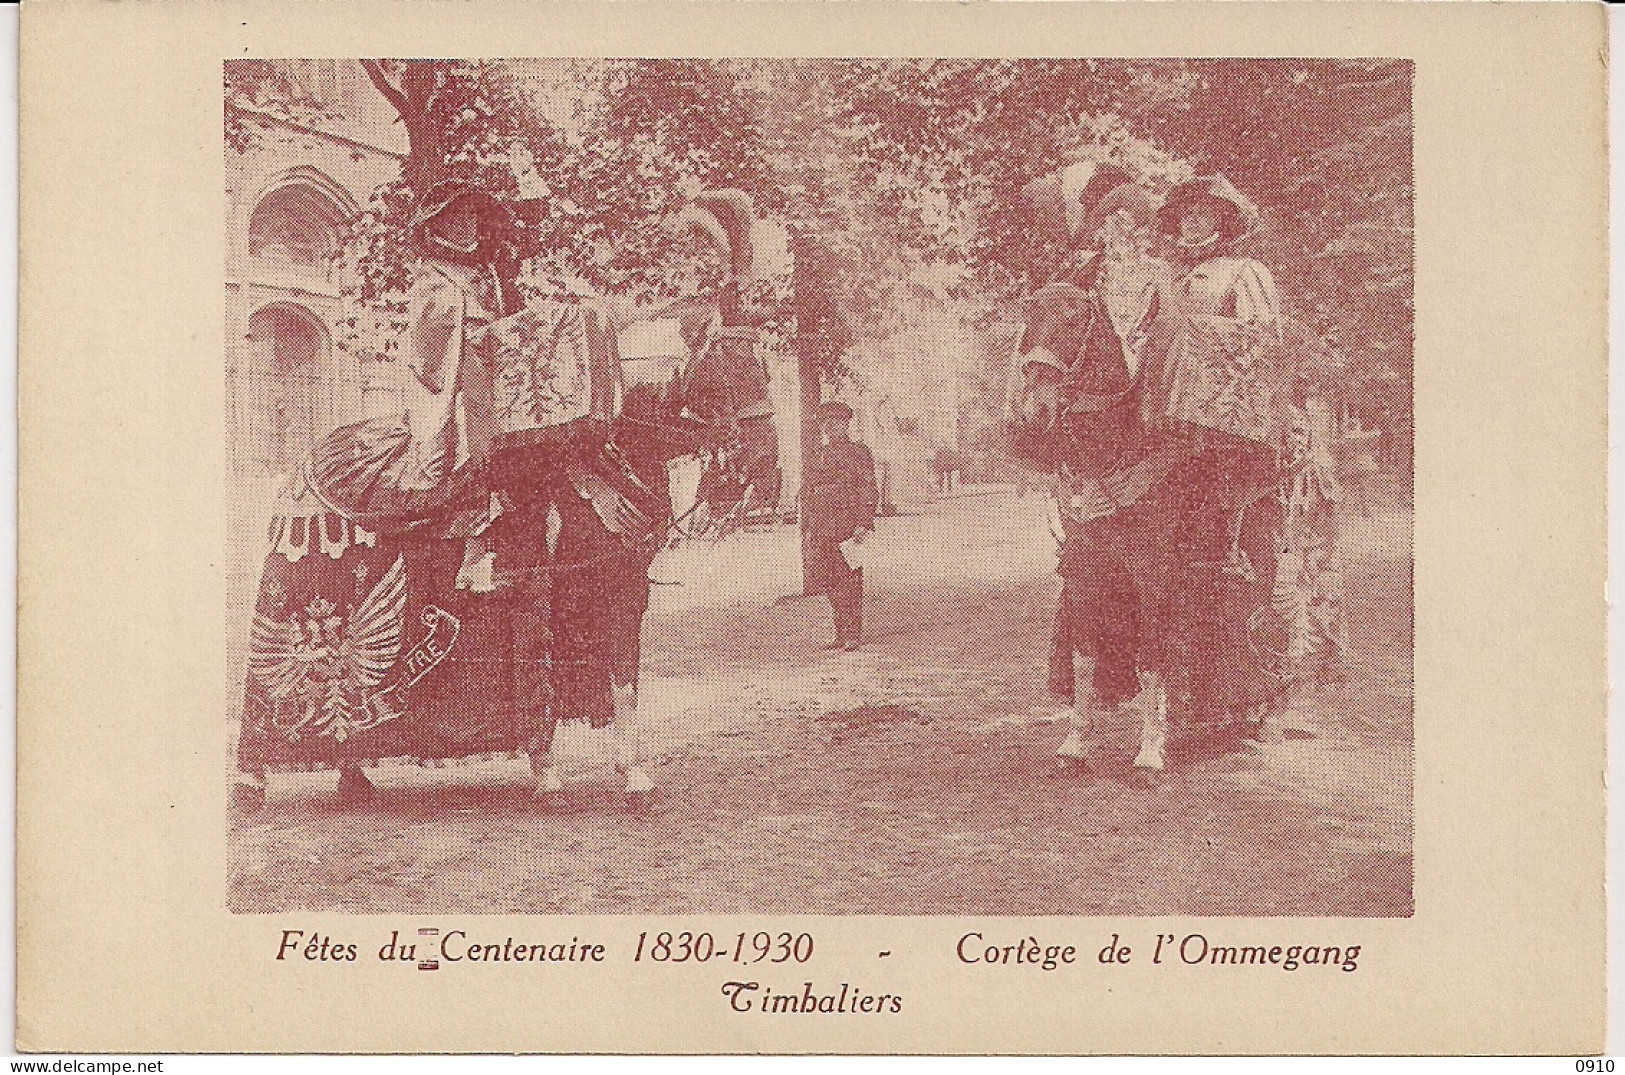 BRUXELLES-BRUSSEL " FETES DU CENTENAIRE 1830-1930-CORTEGE DE L'OMMEGANG-TIBALIERS-PAUKENISTEN" - Fêtes, événements